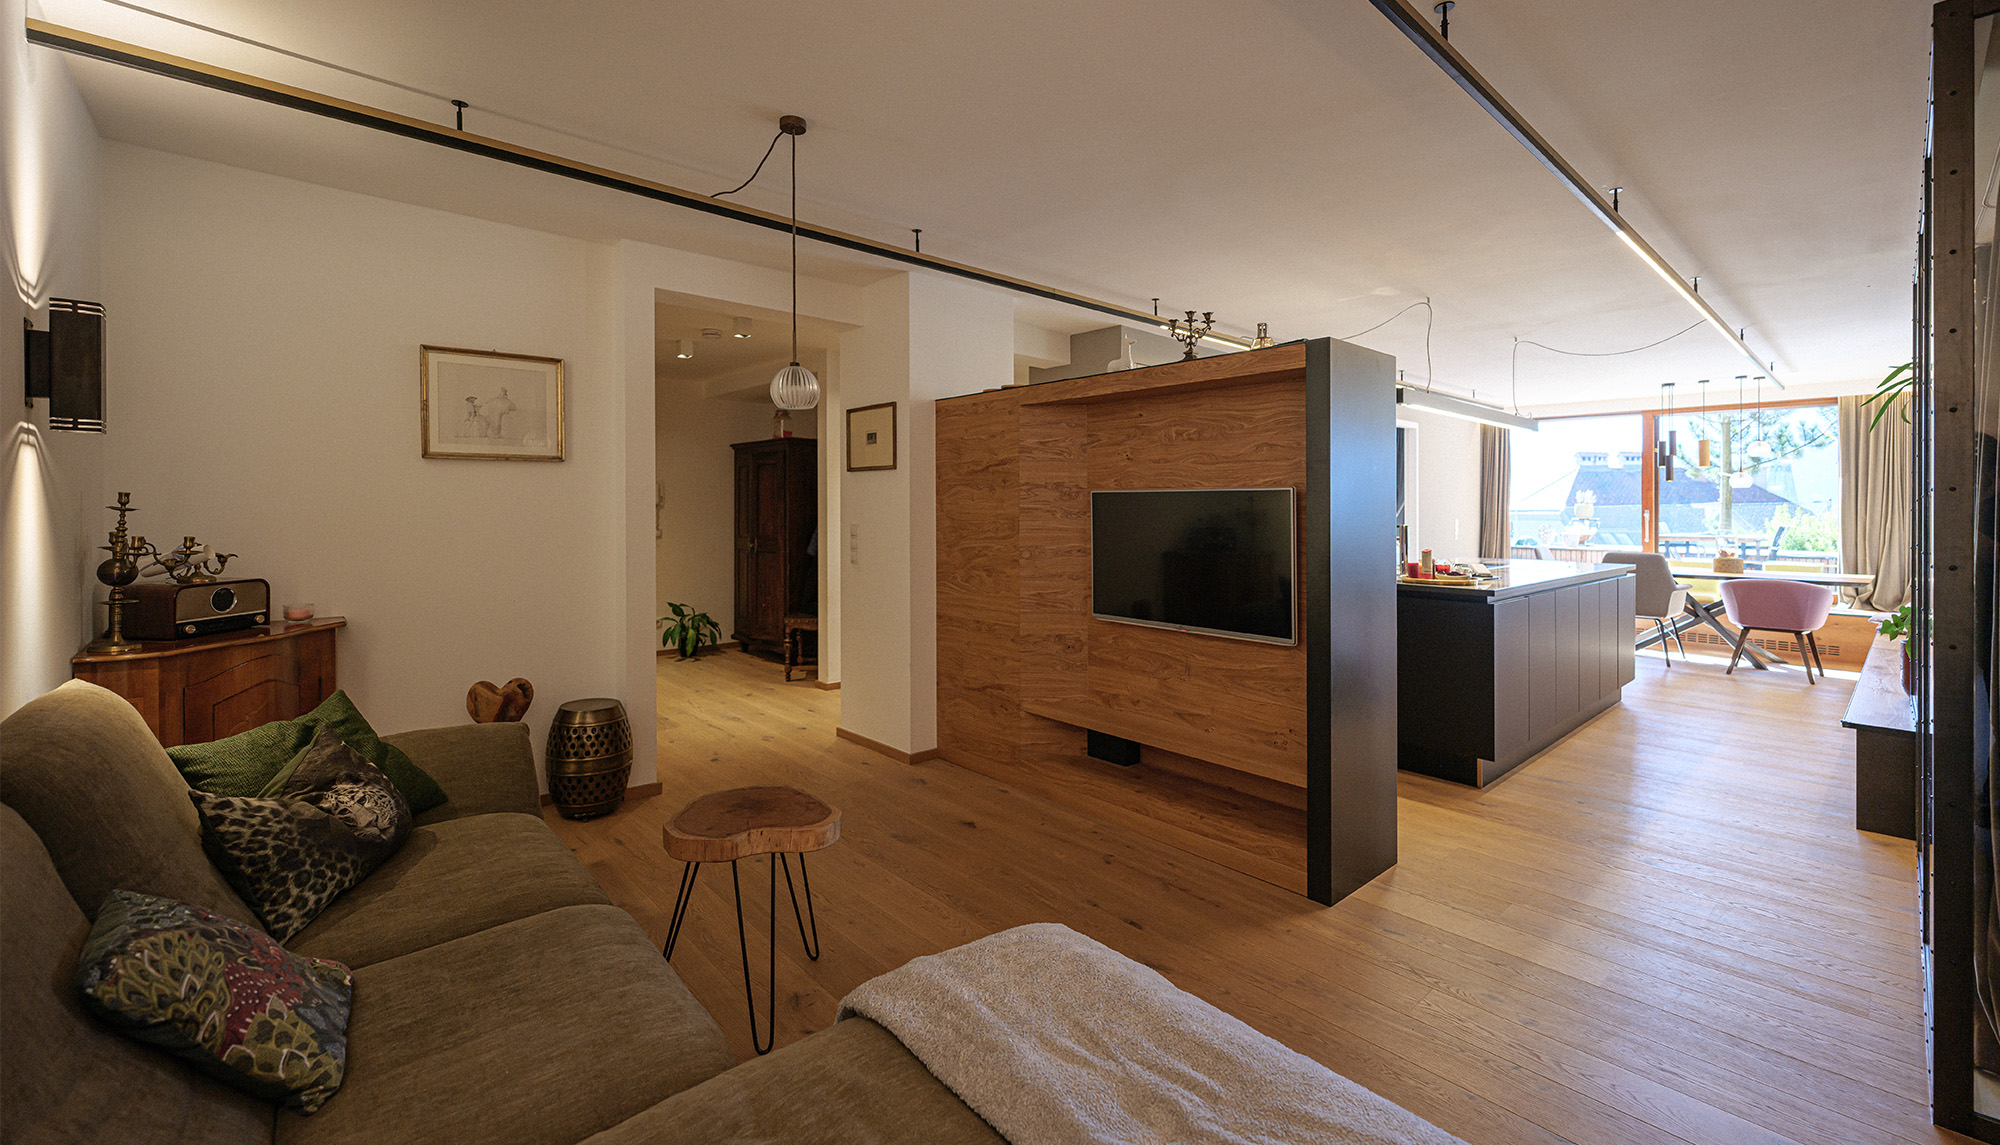 Interior Design | Living Area | Carpenter-made divider